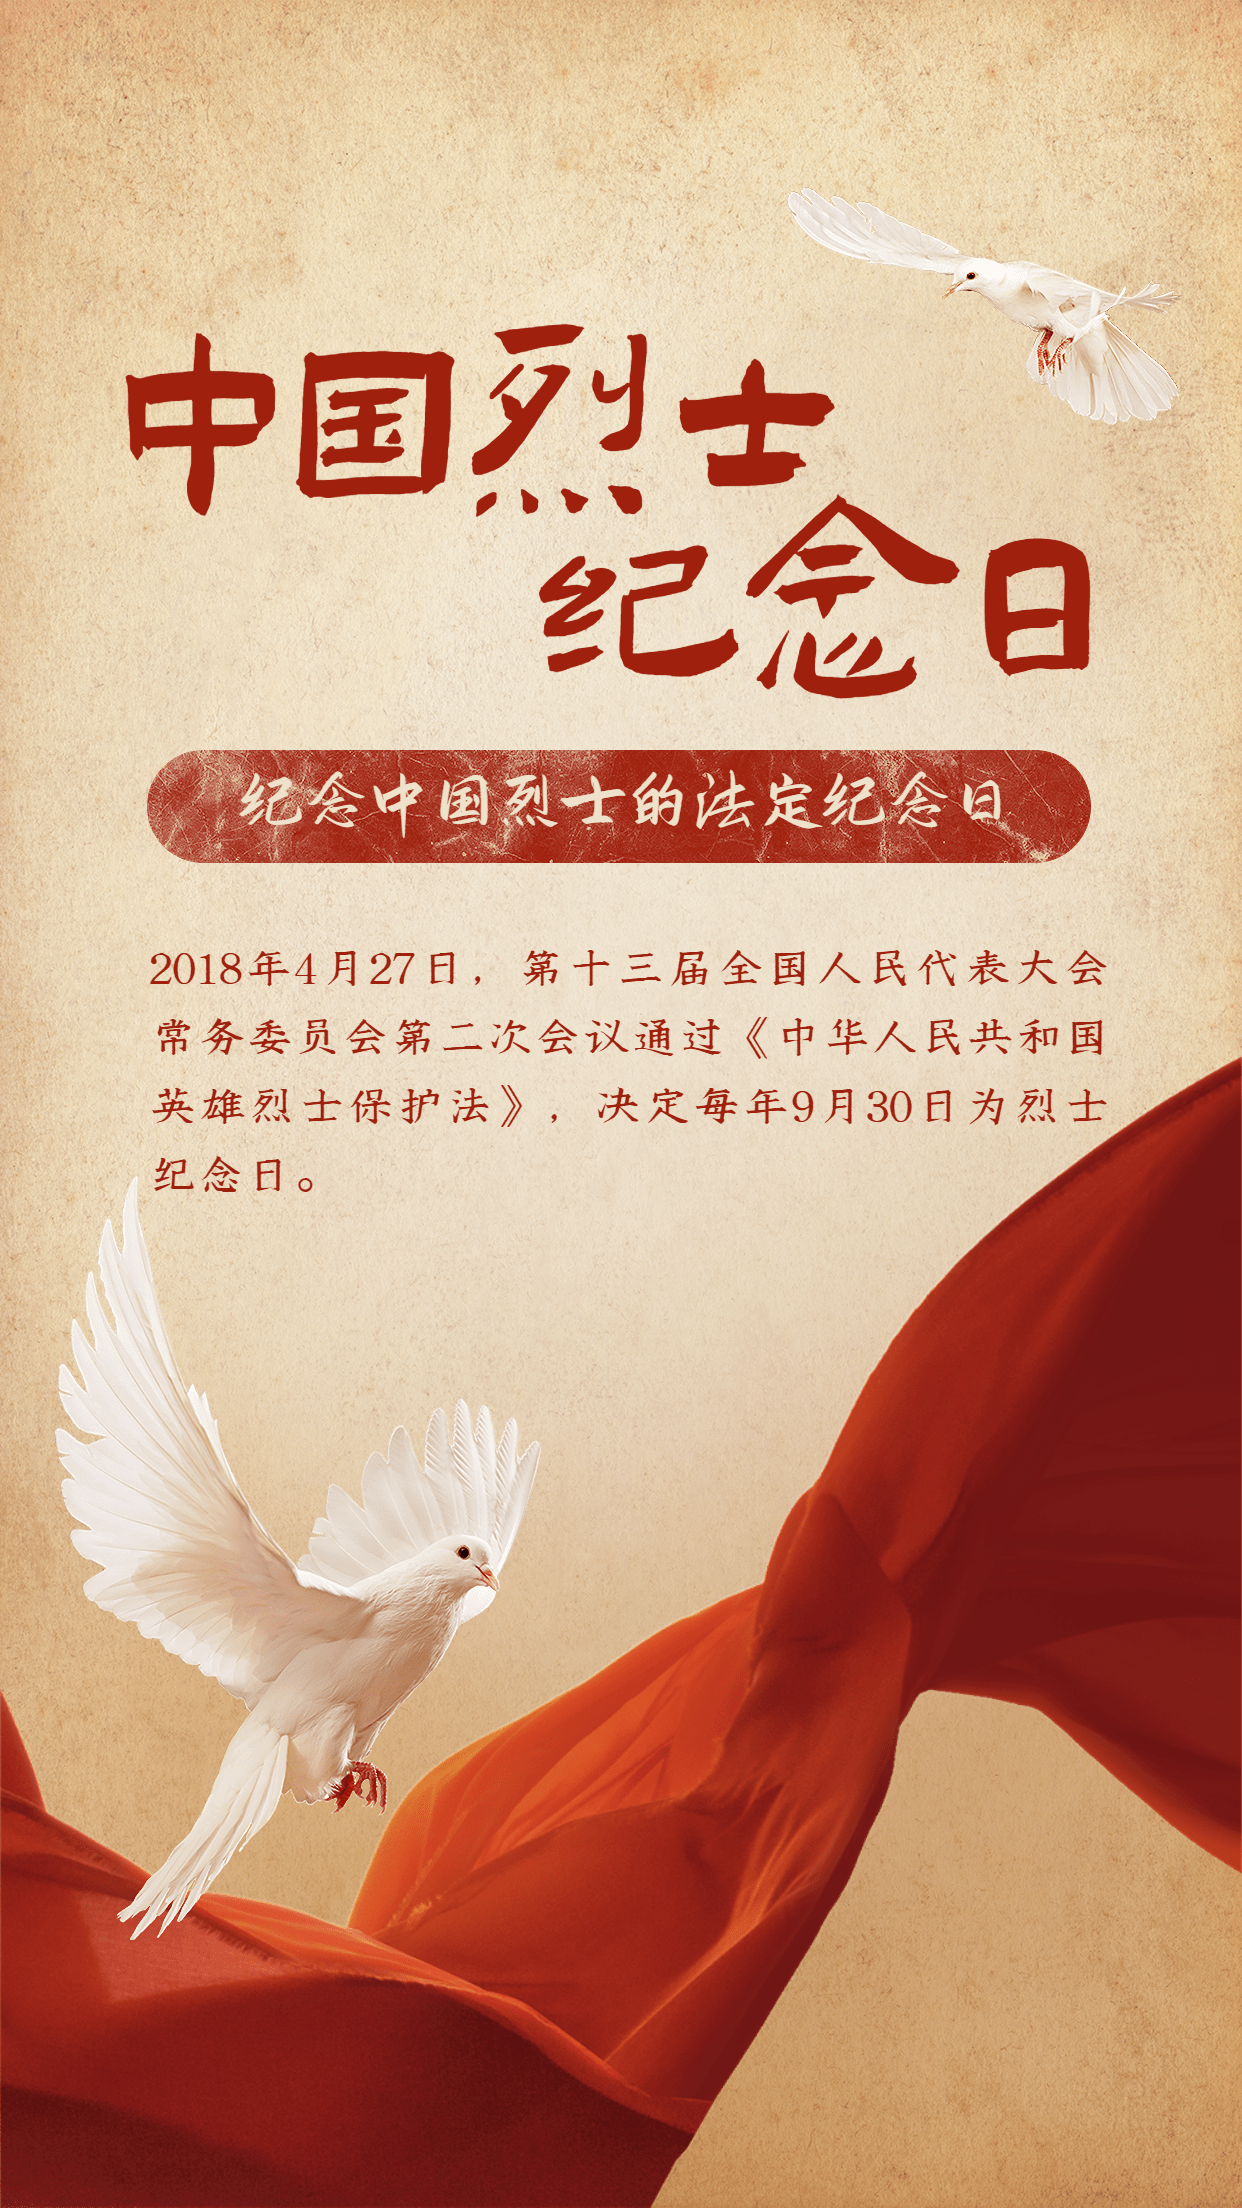 中国烈士纪念日节日宣传排版手机海报预览效果